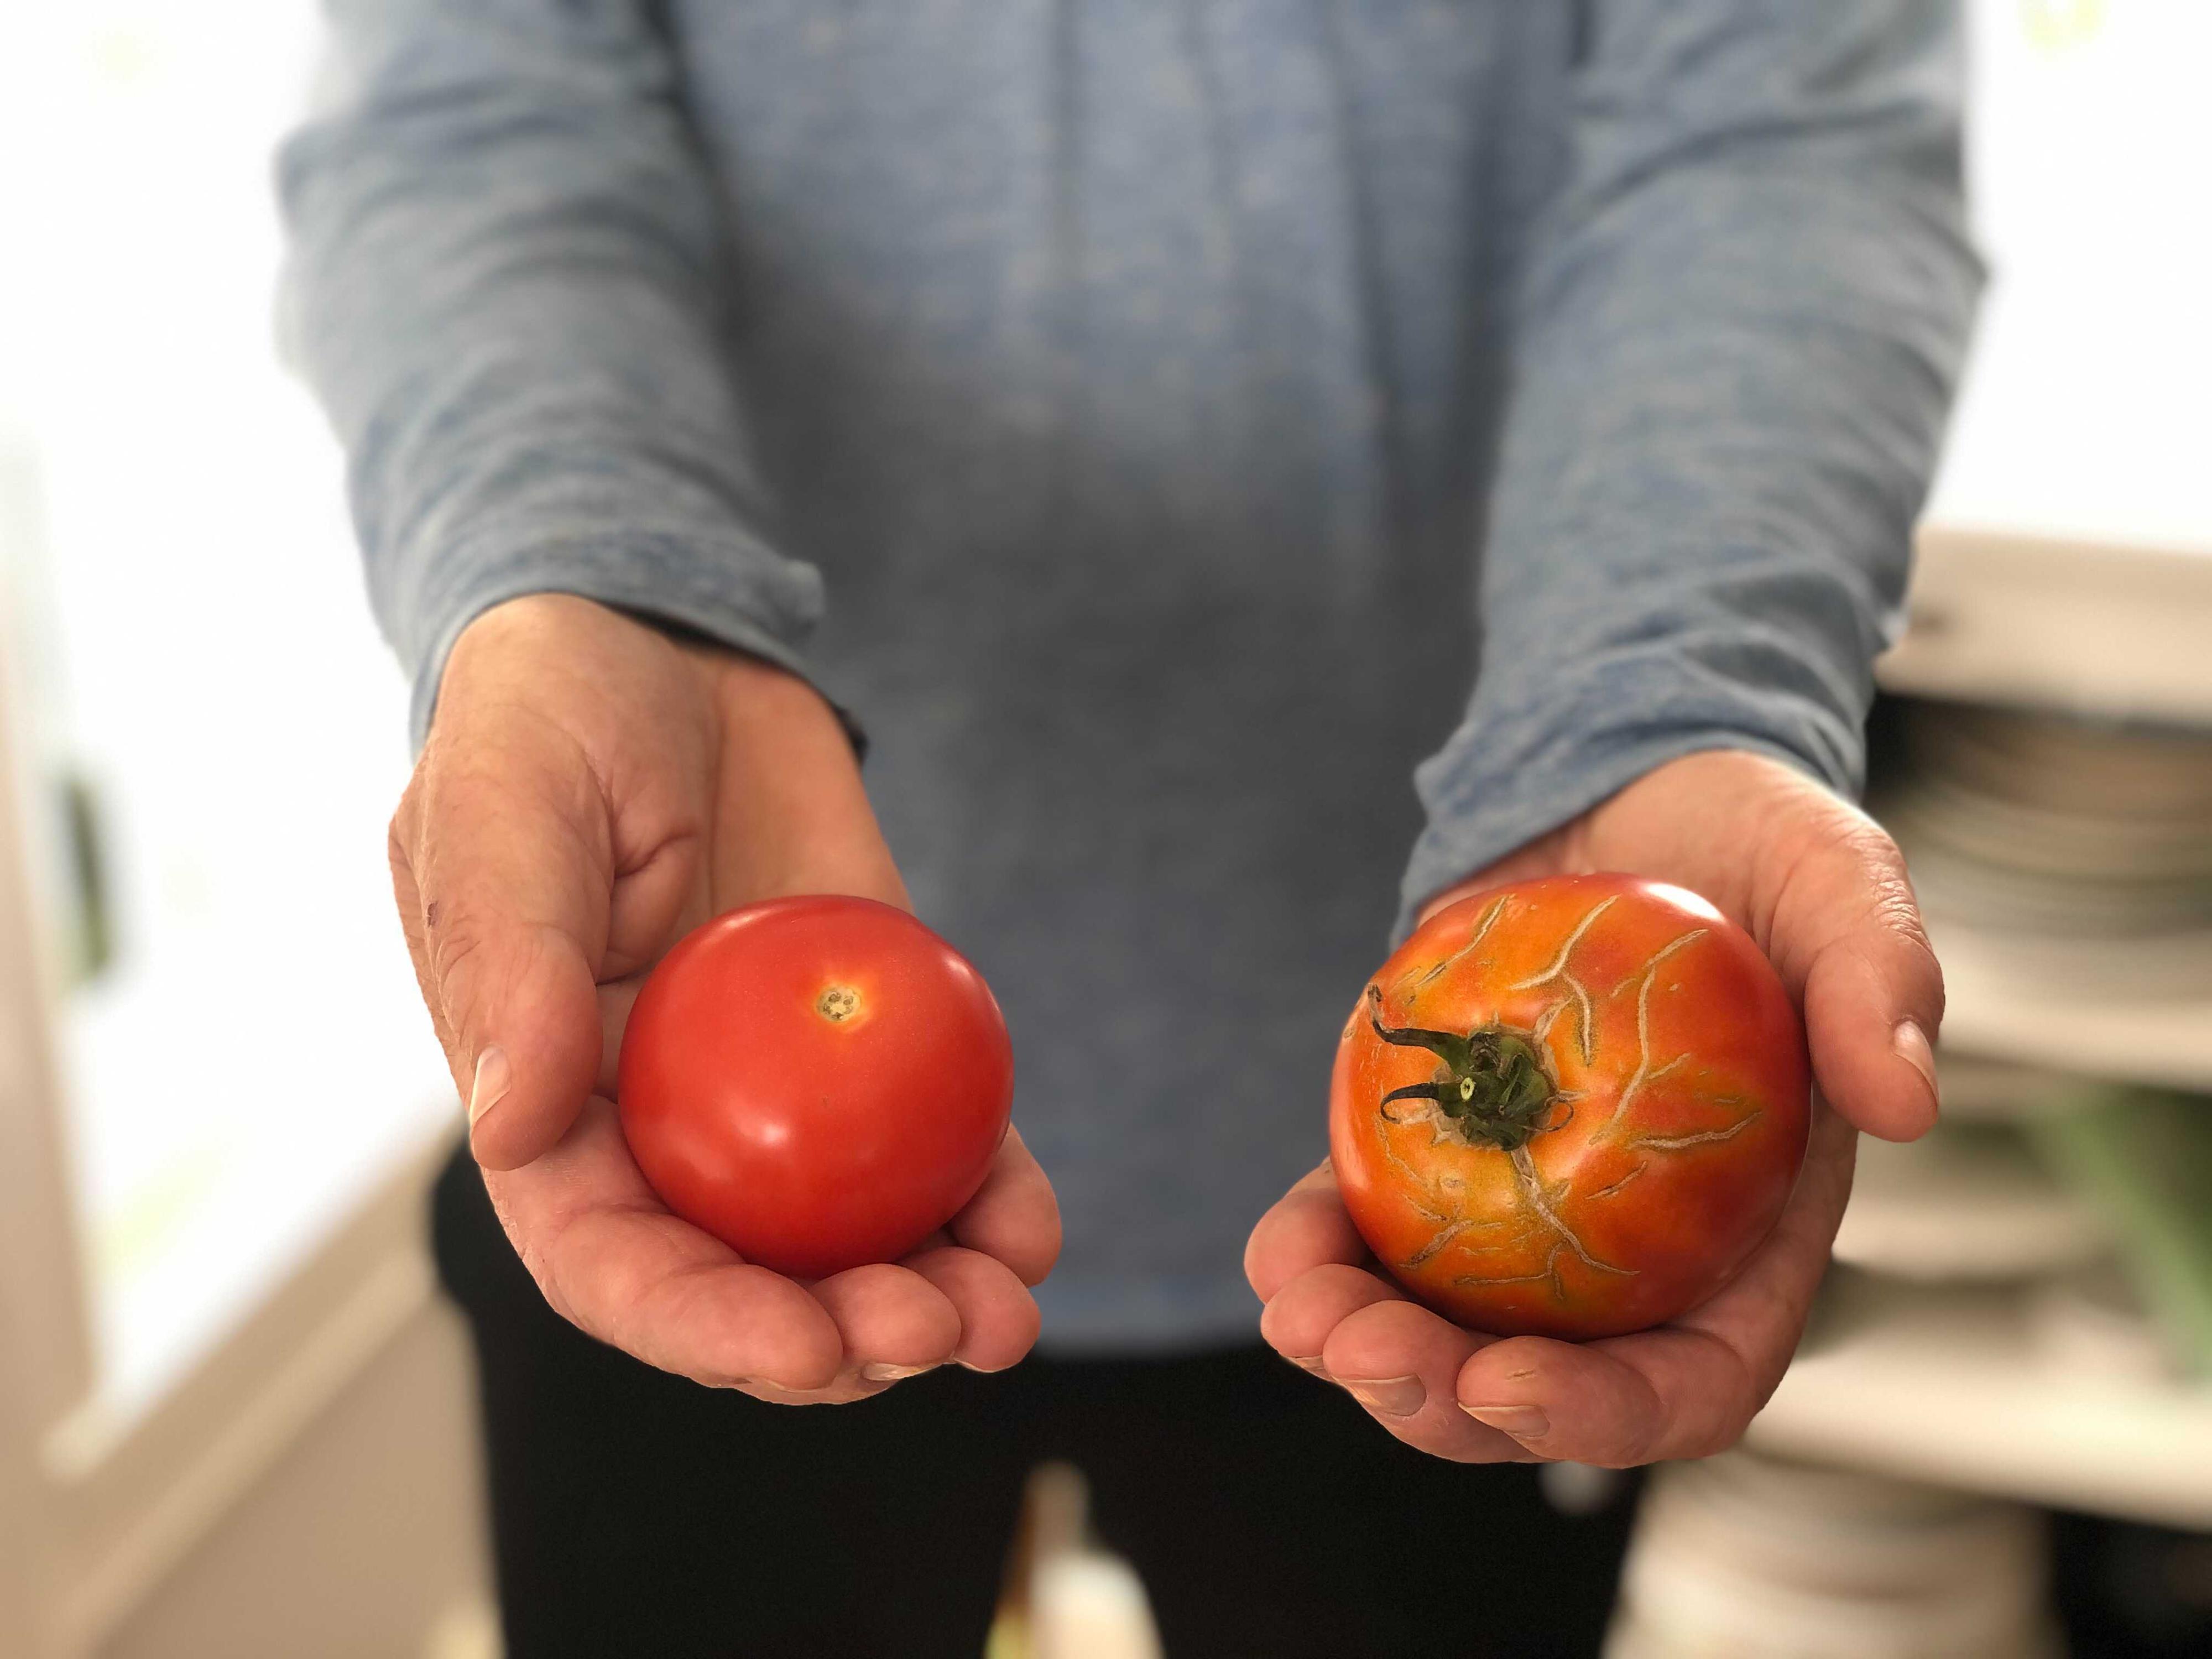 TOMAT-DILEMMA: Hvilken tomat ville du kjøpt? Tomaten til venstre koster 36,90 for kiloet, mens den til høyre koster 295 kroner kiloet.